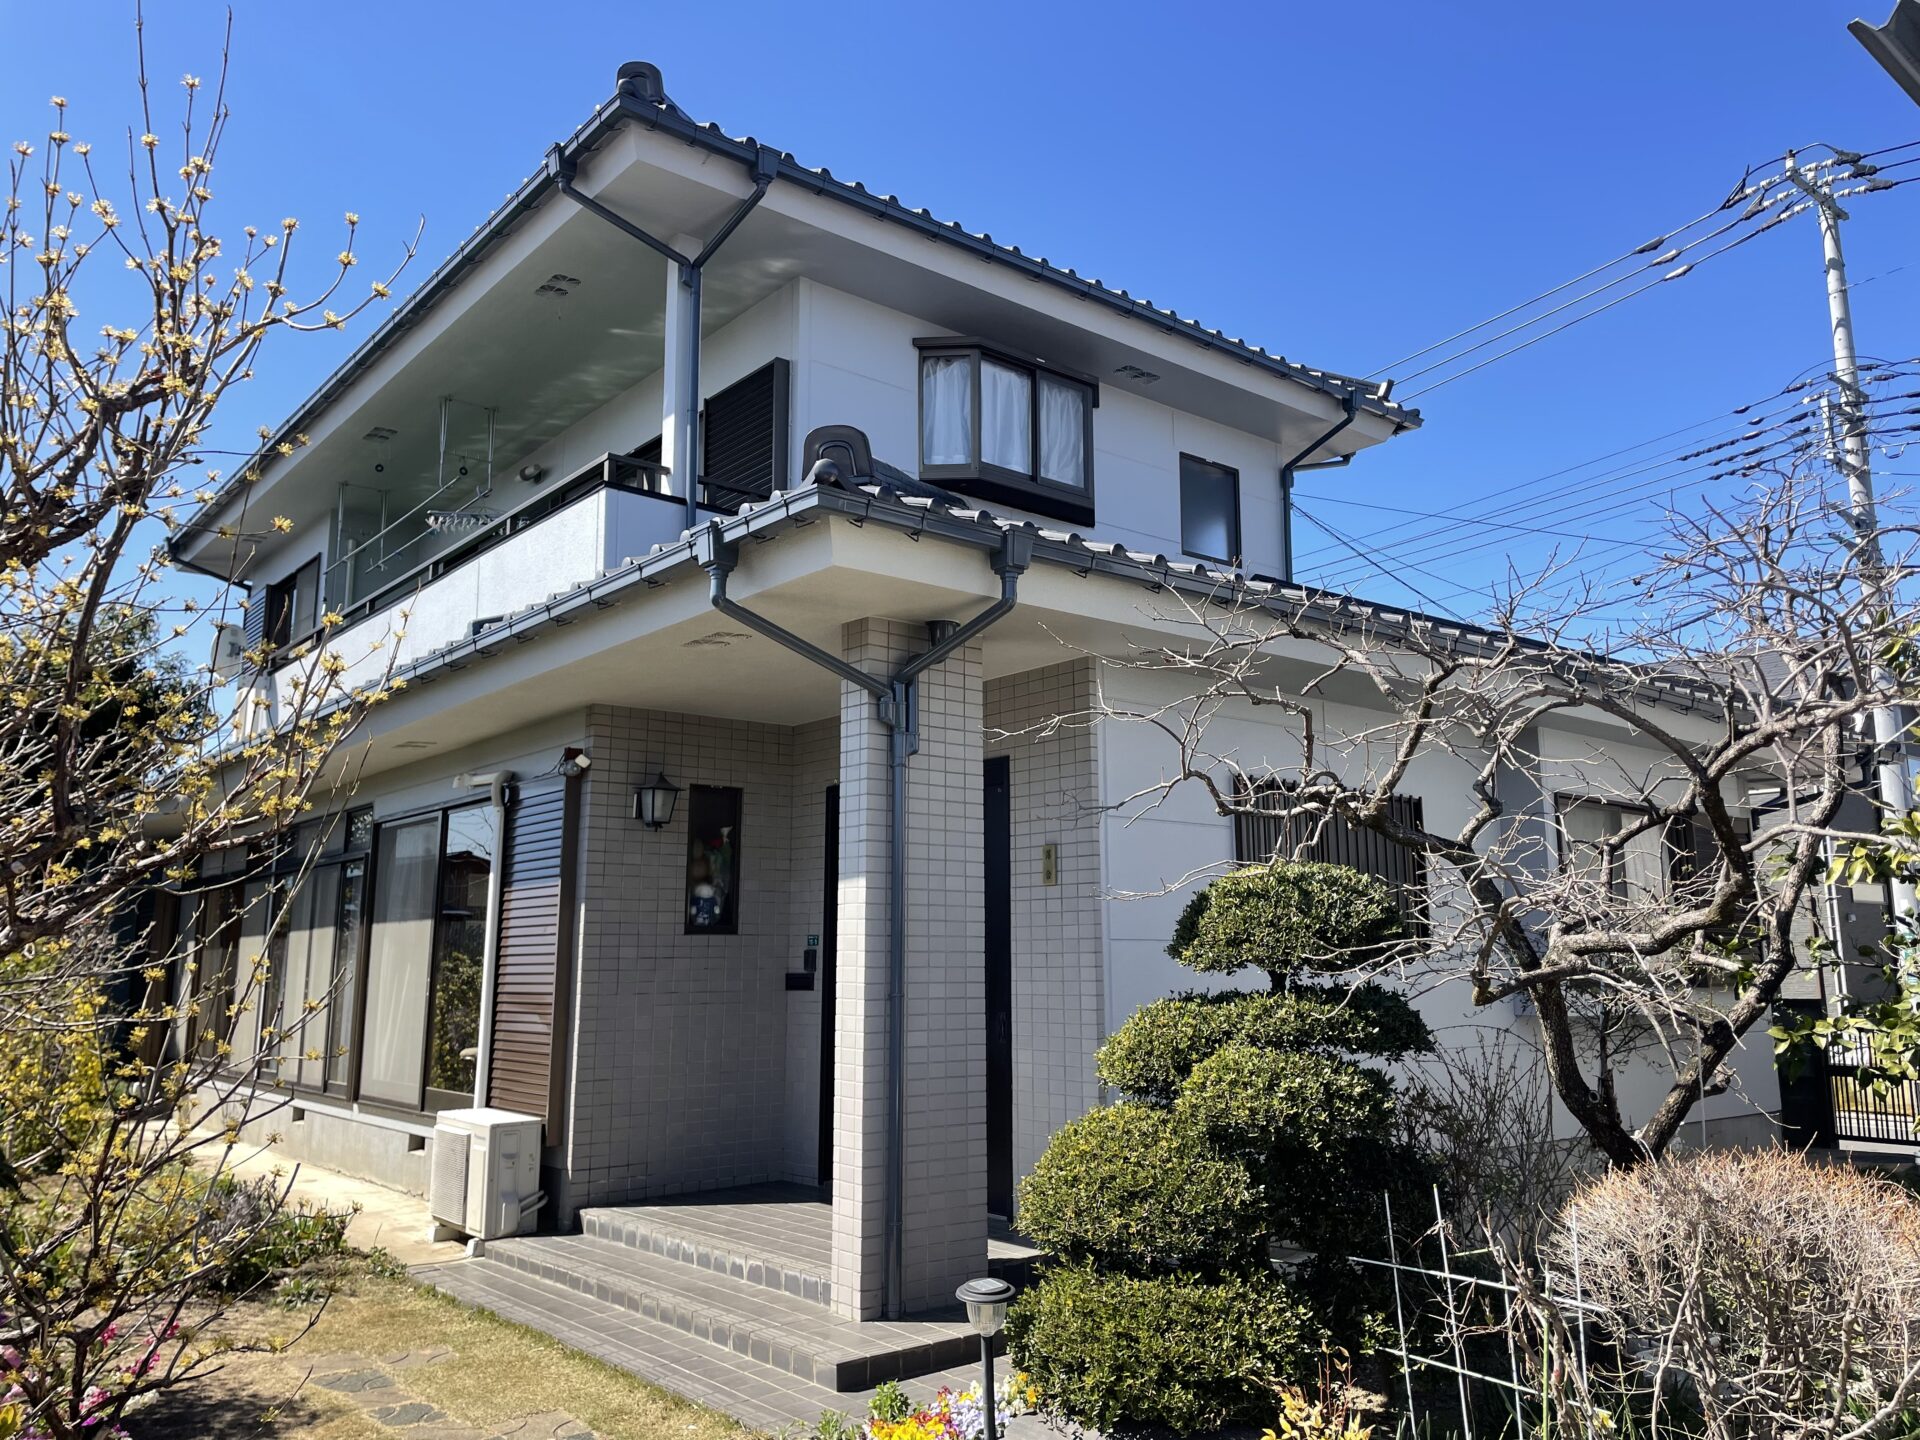 埼玉県川越市で母屋の外壁と倉庫をグレー色で統一して落ち着いた雰囲気のお家になりました。